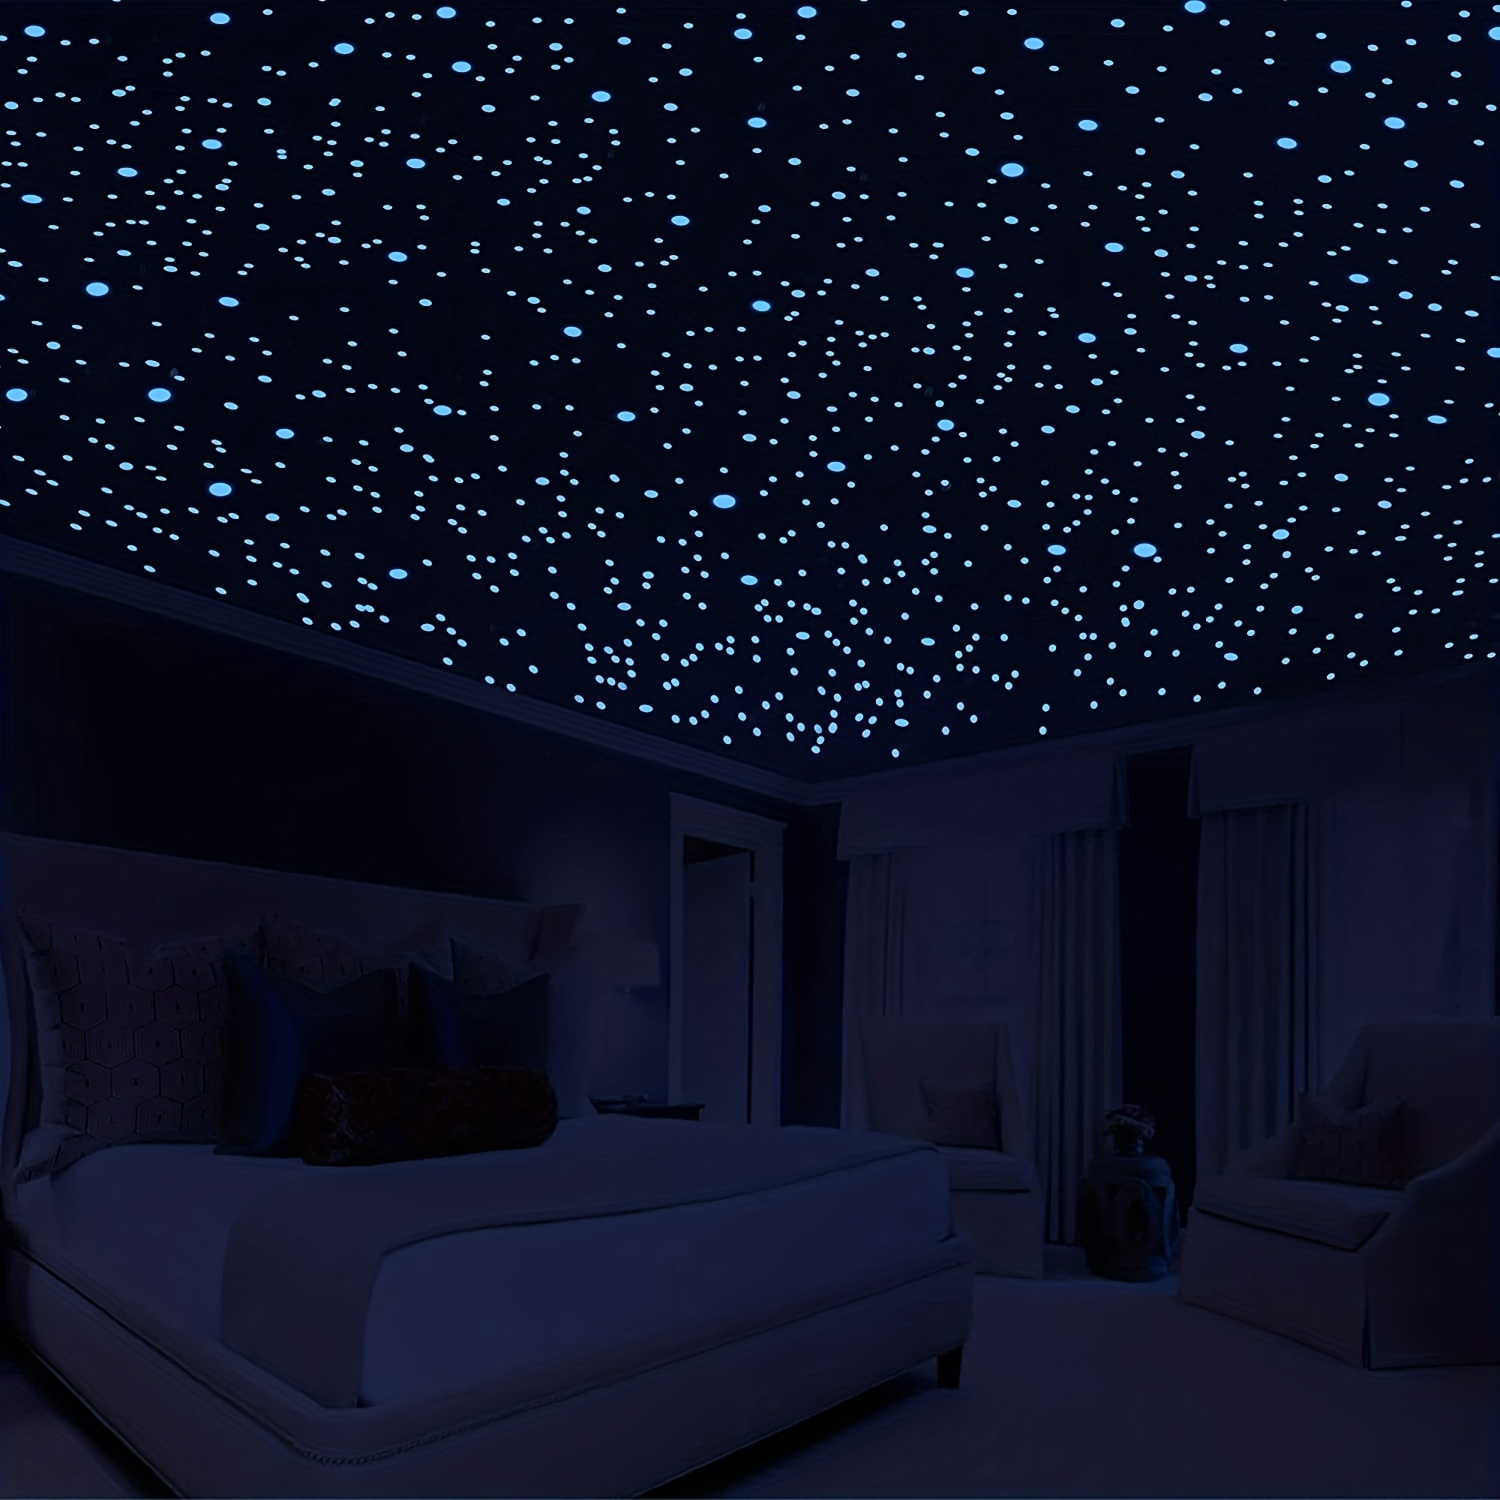 Glow Dark Stars Stickers Ceiling - 50/100pcs 3d Luminous Wall Sticker Baby  Room - Aliexpress